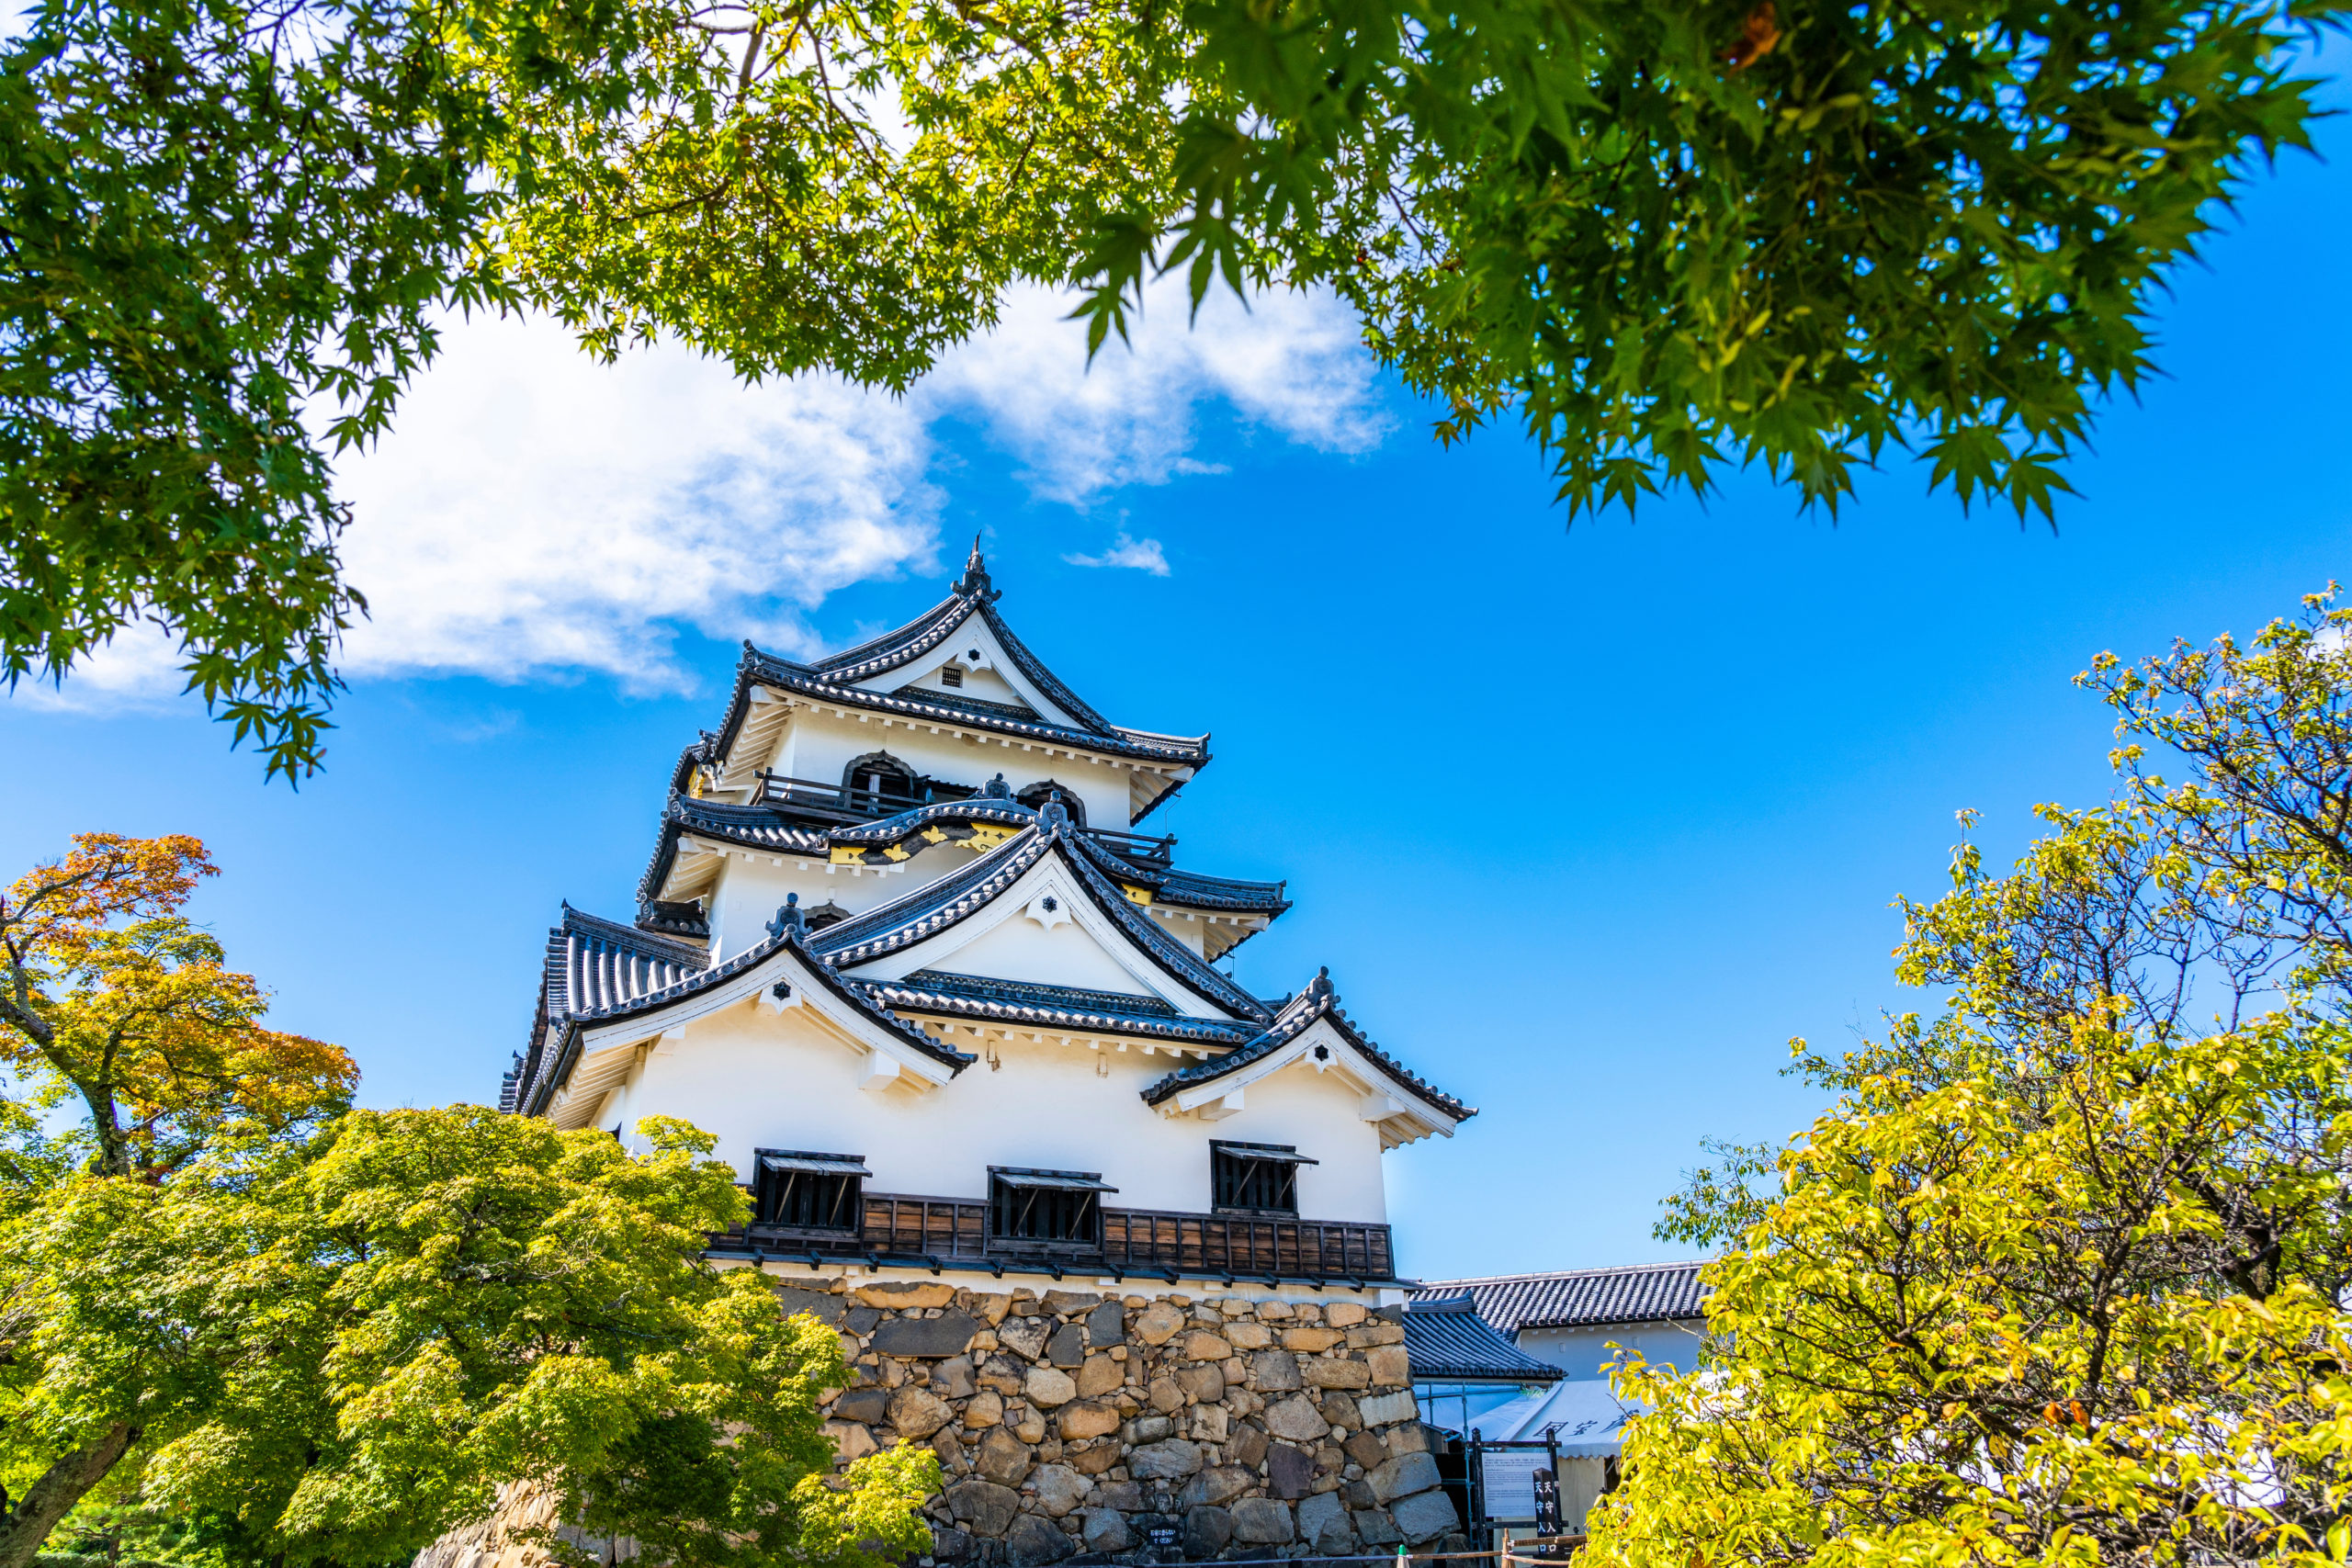 hikone castle, shiga prefecture